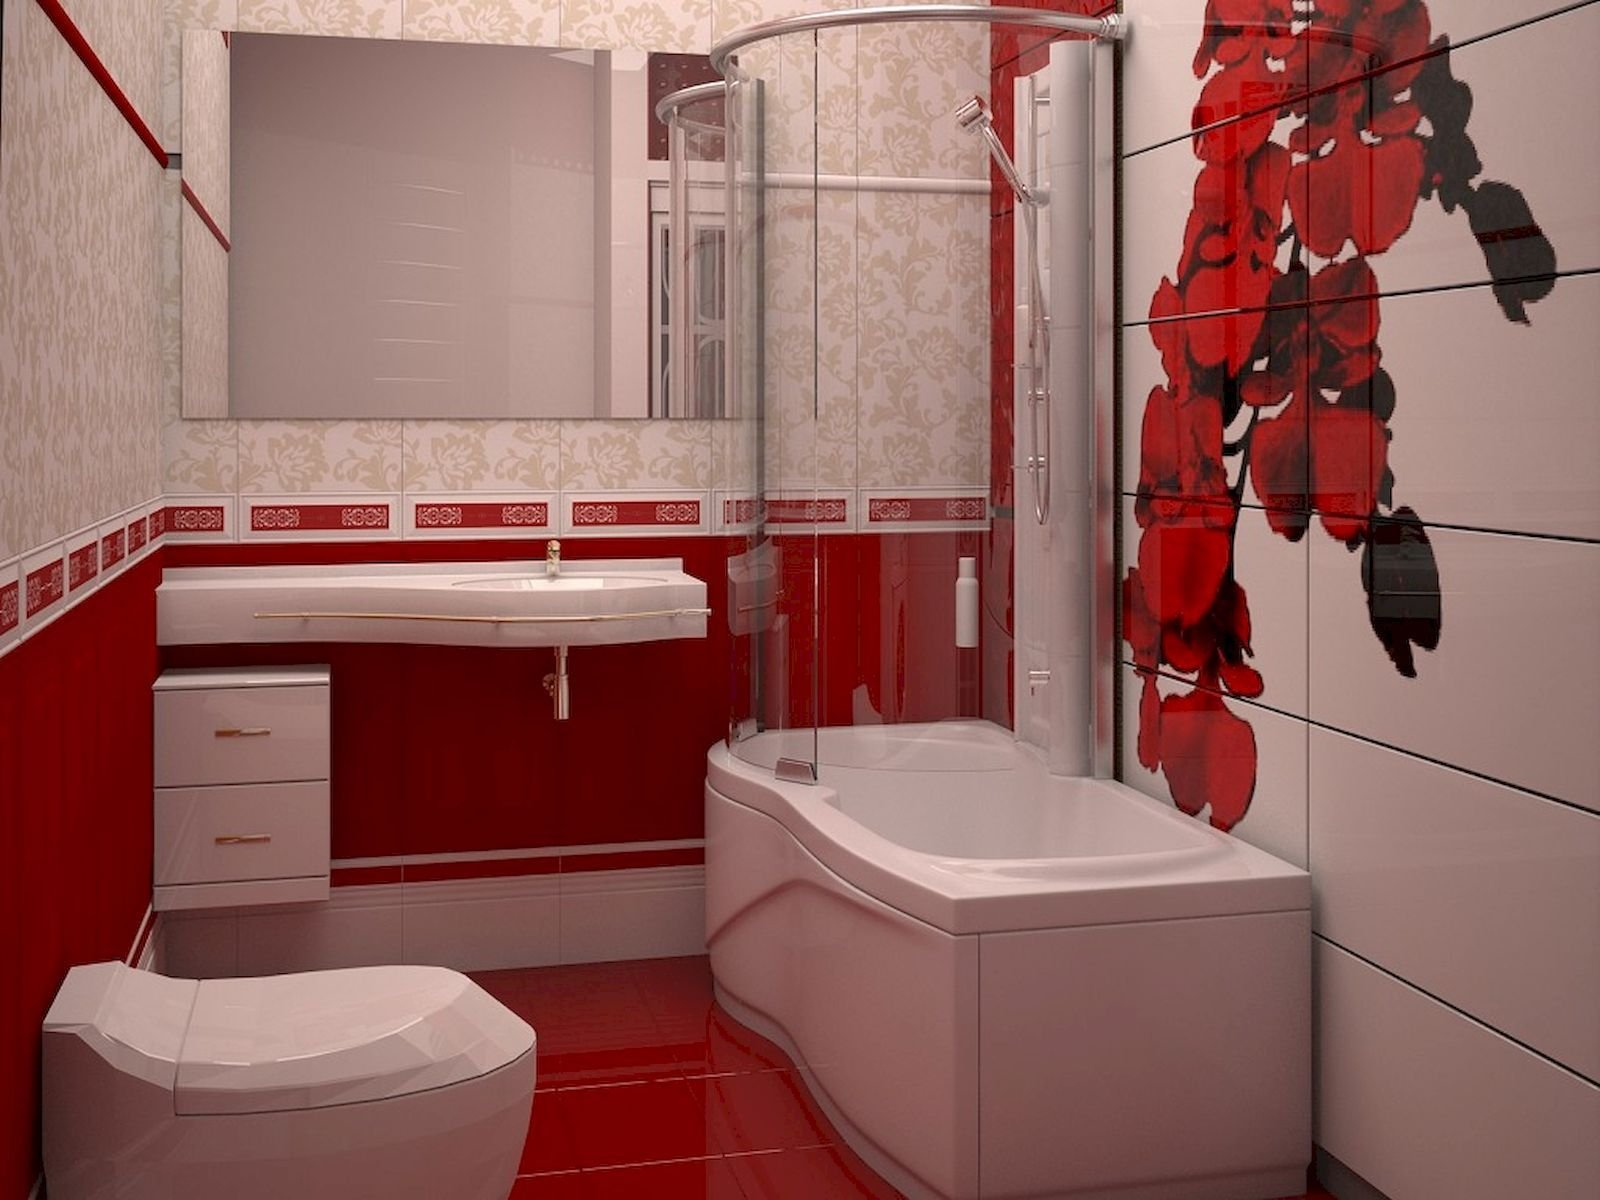 Красная плитка в ванной plitka vanny ru. Ванная комната в Красном цвете. Красно белая ванная комната. Ванная комната в красно белом цвете. Красная плитка в маленькой ванной.